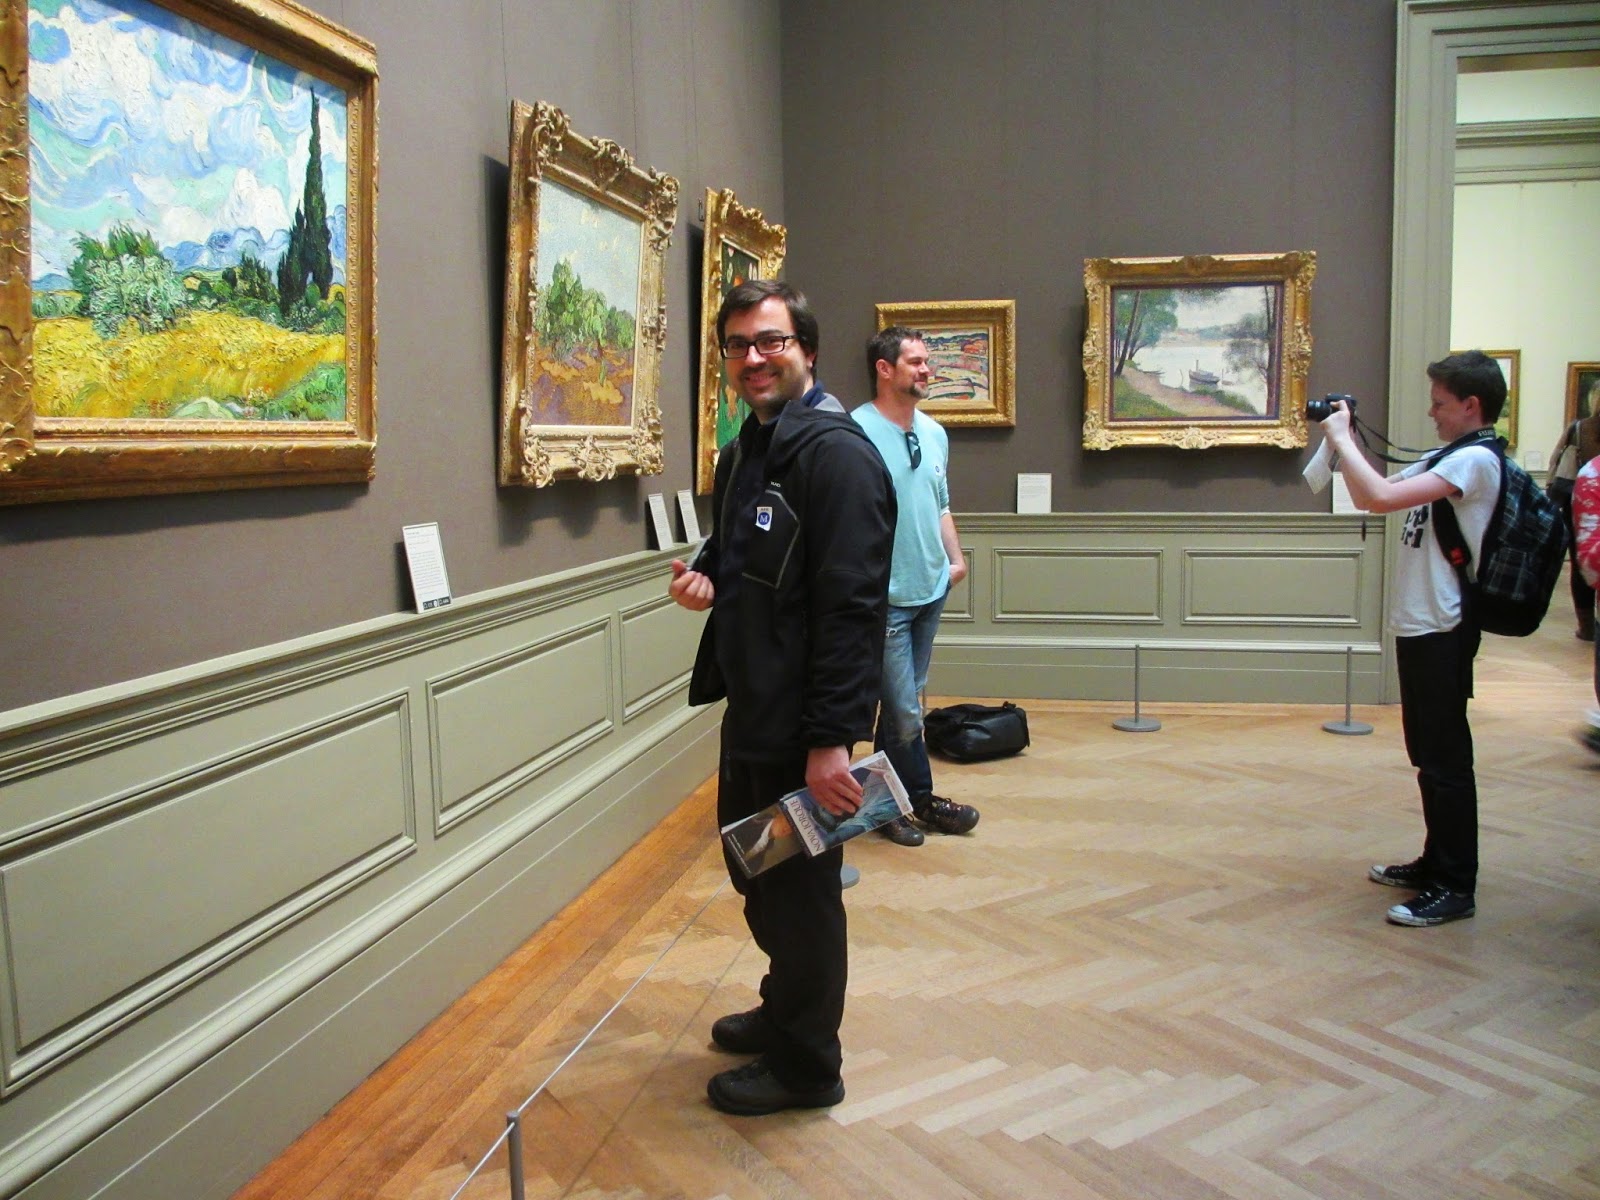 Os melhores museus nos EUA para ver as obras de VAN GOGH | Na rota do Van Gogh nos EUA